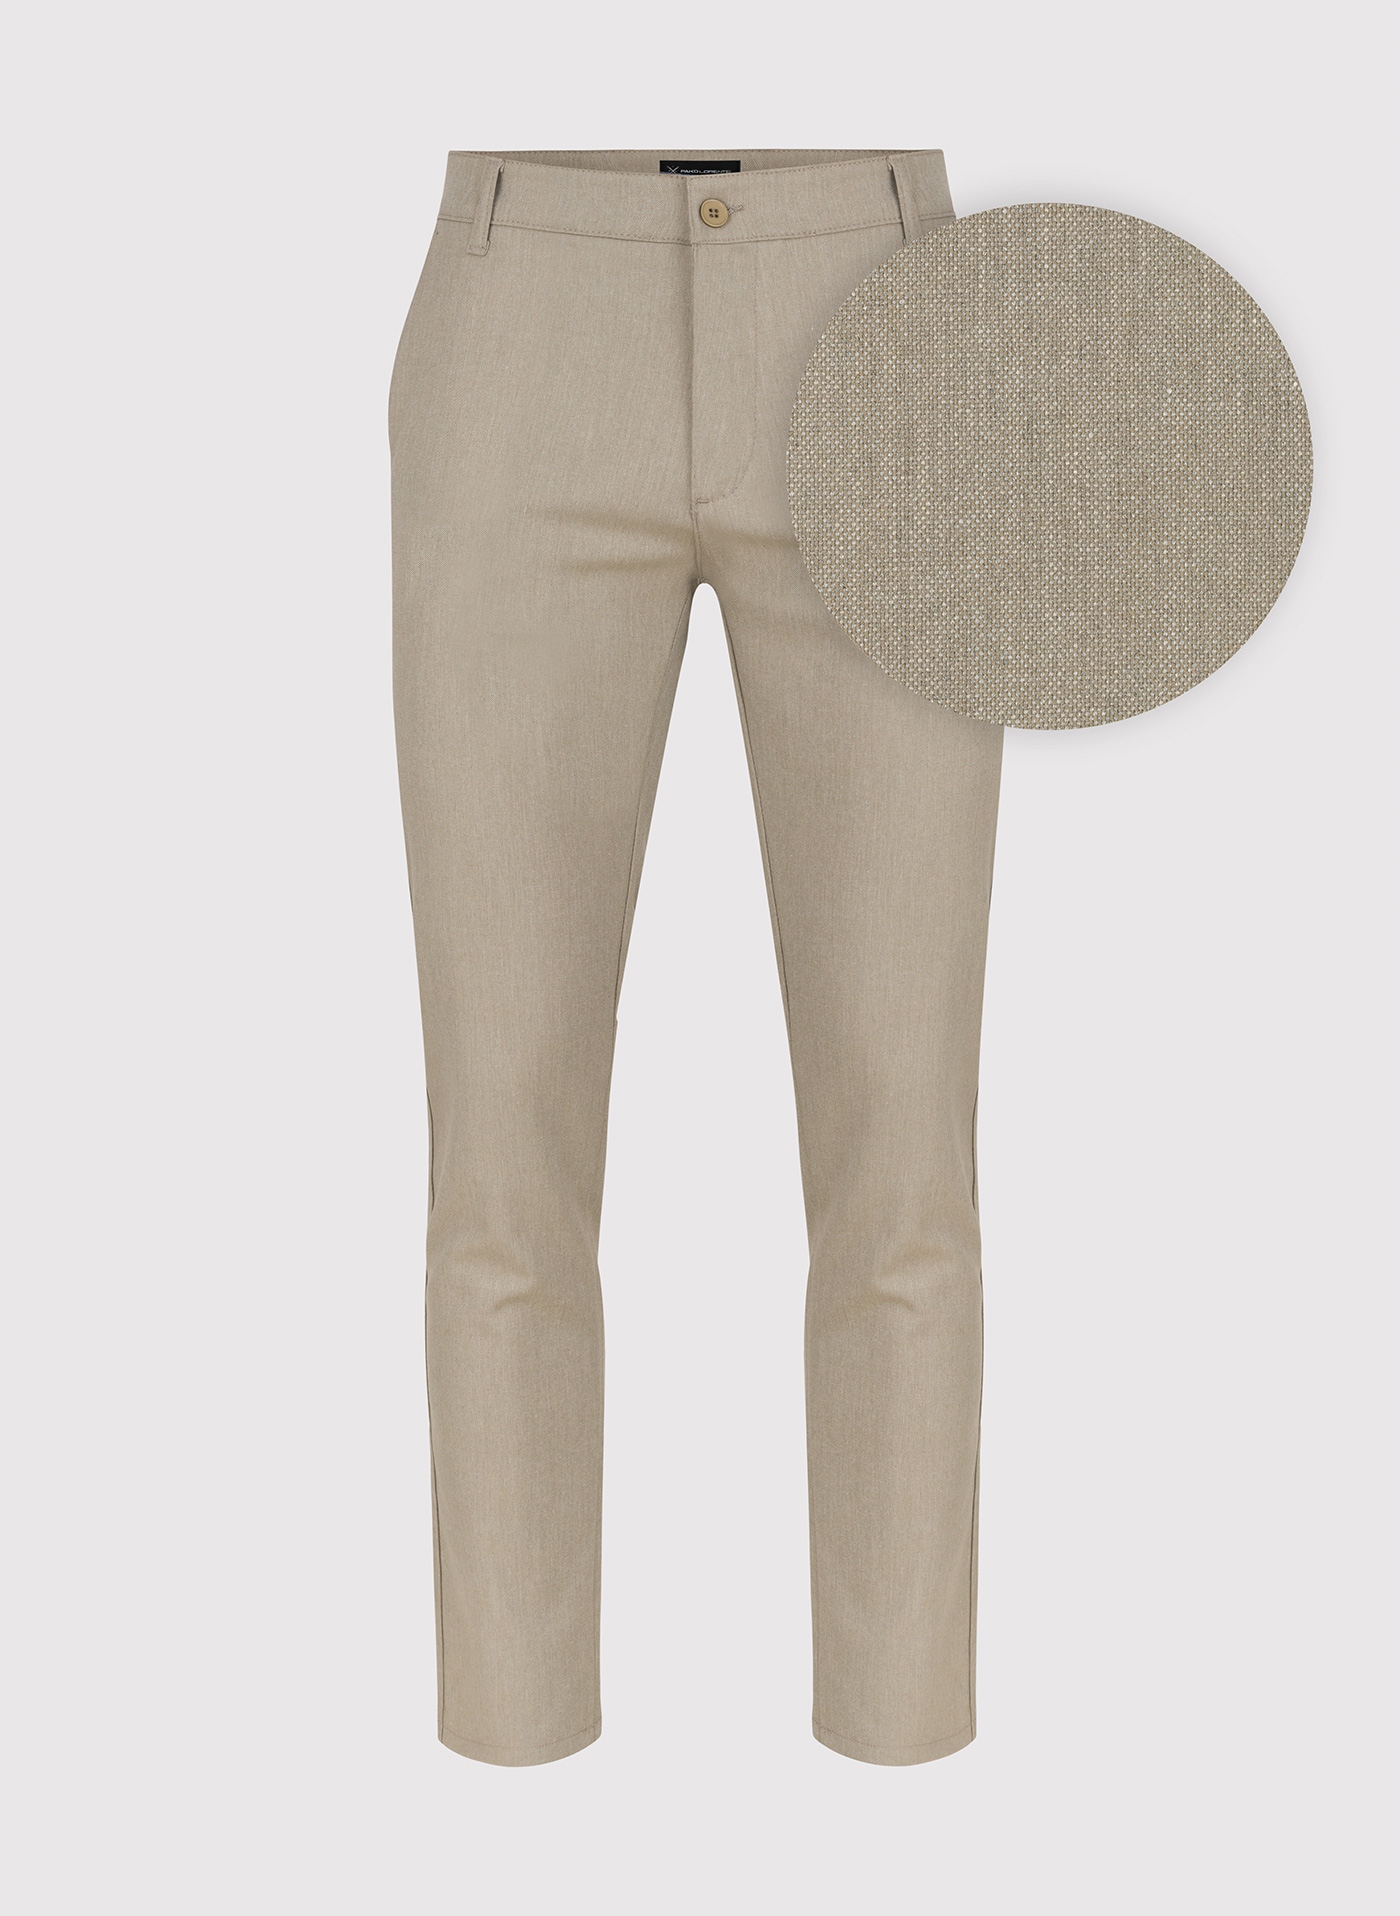 Beżowe klasyczne spodnie męskie Pako Lorente W32 L32